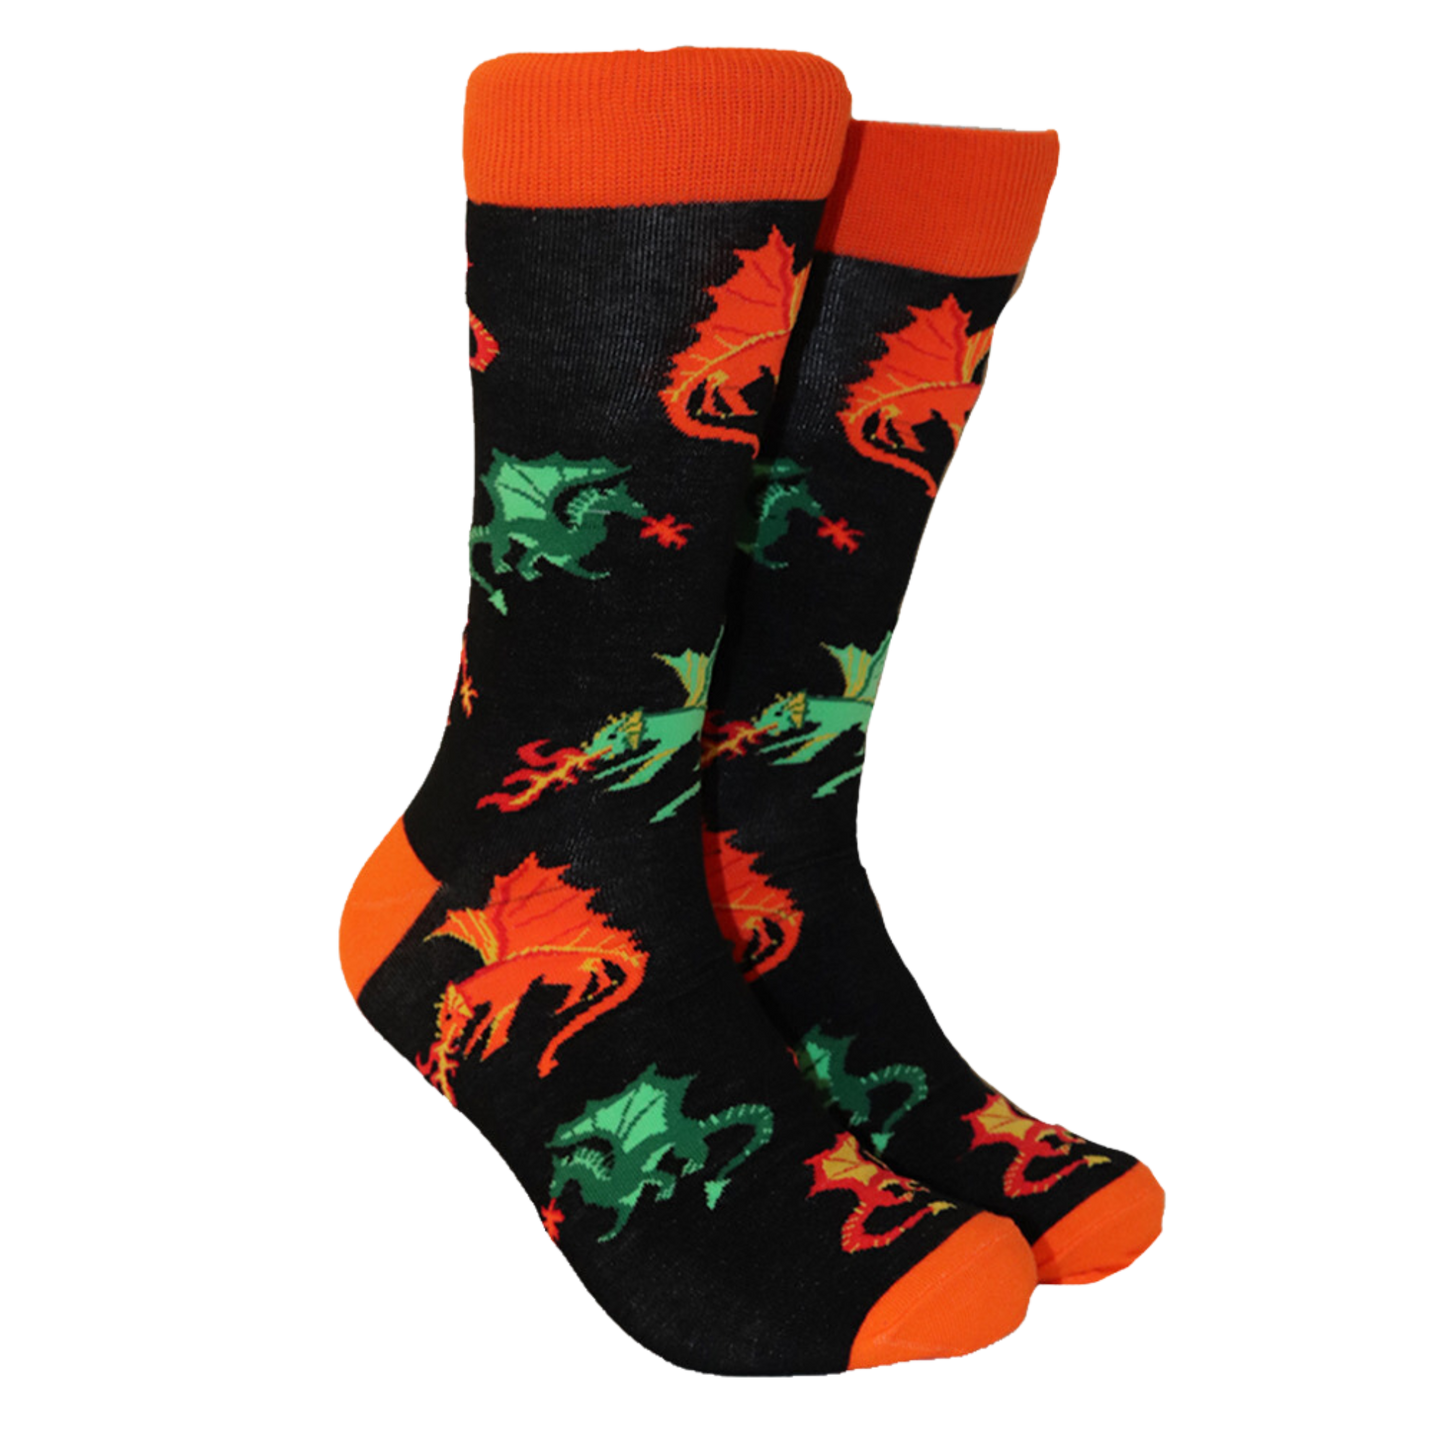 Dragon Fire Socks